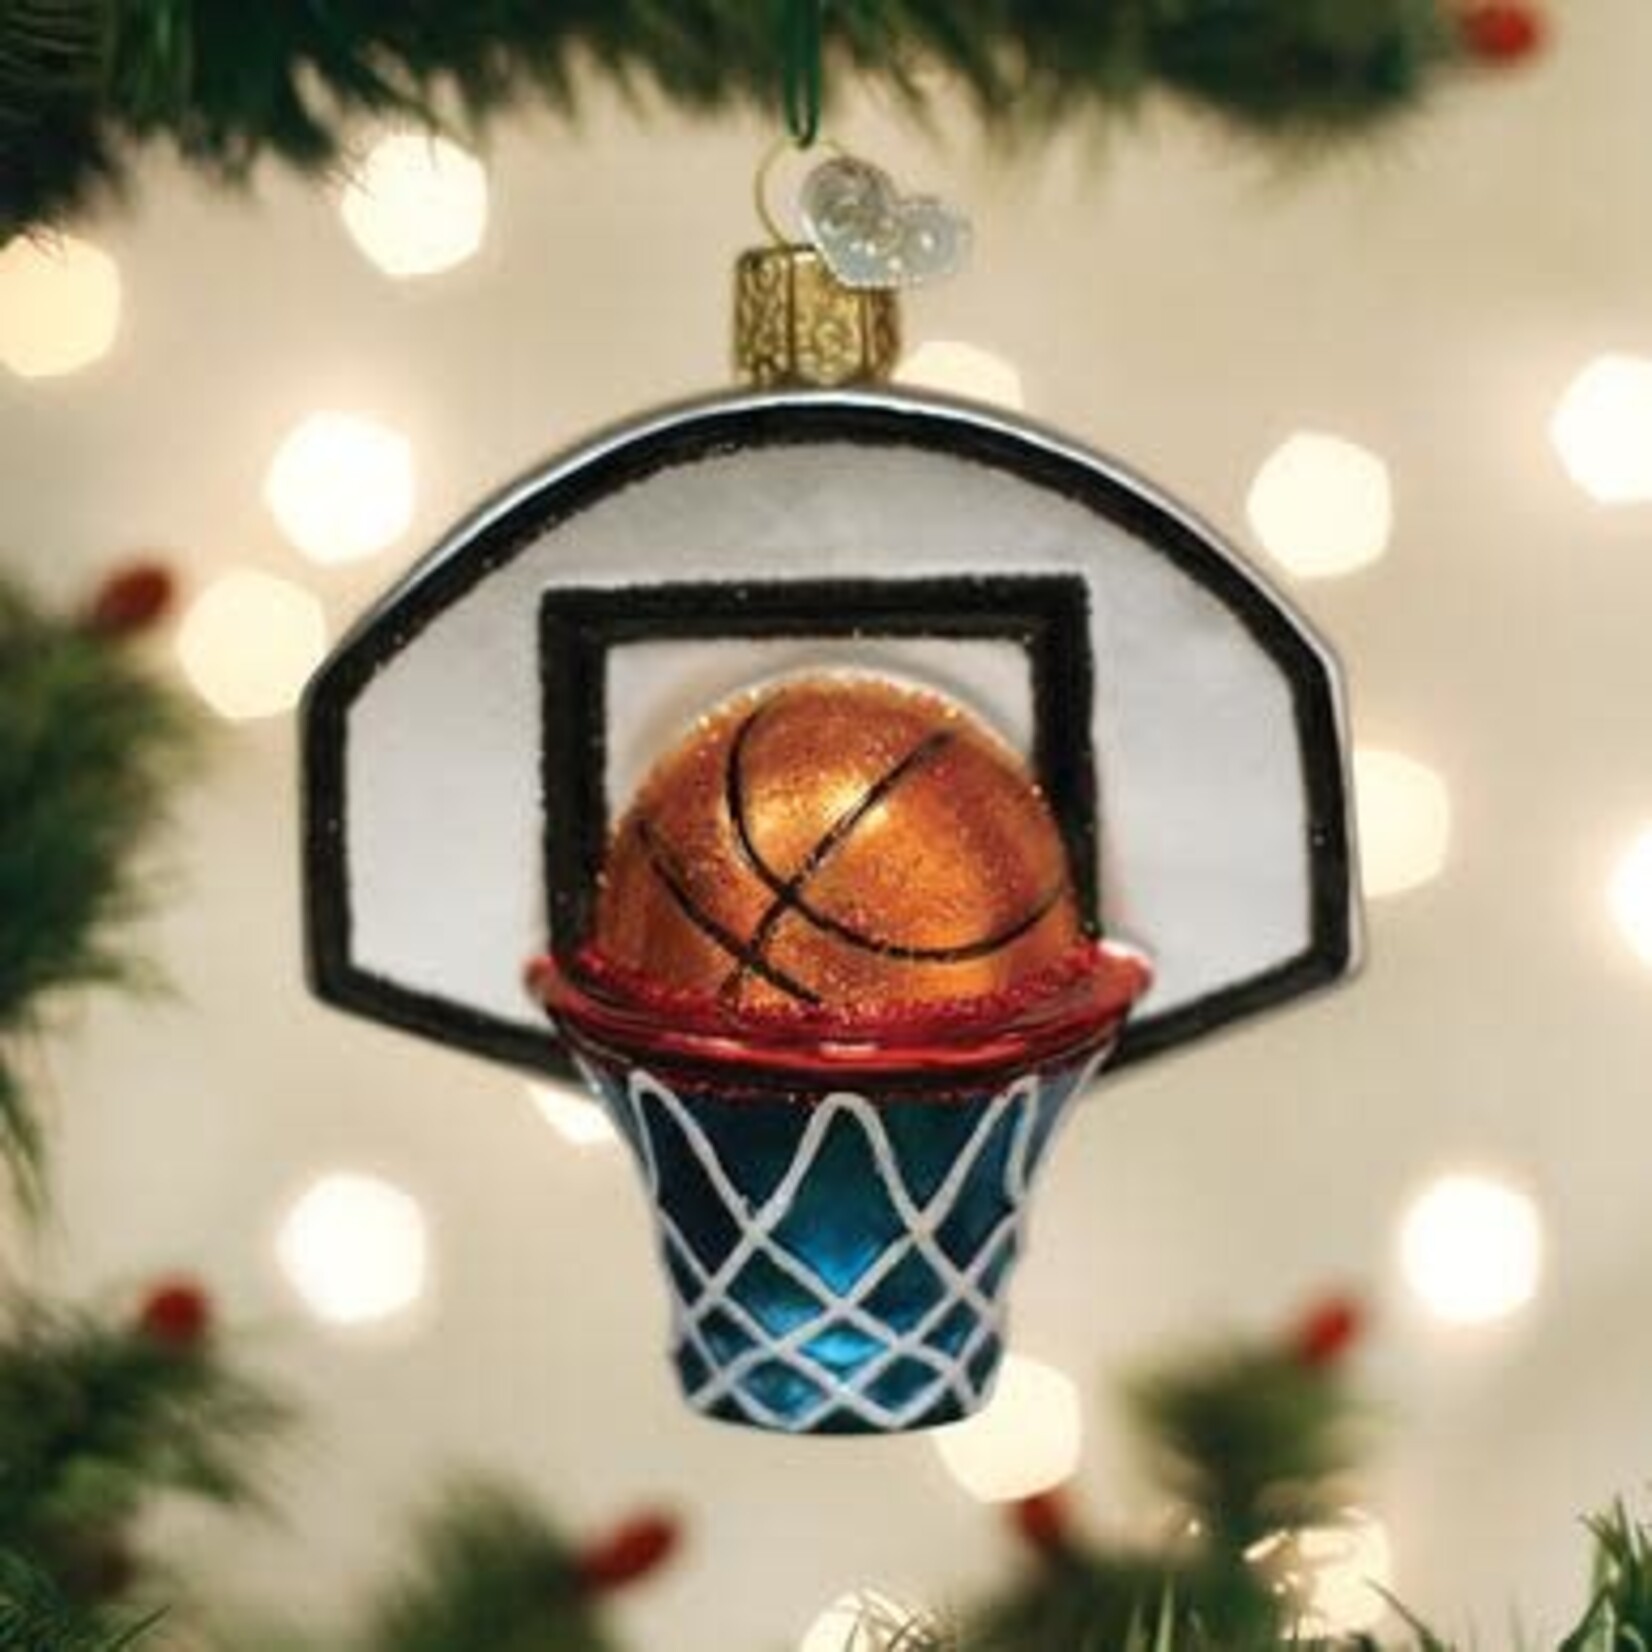 Old World Christmas Old World Christmas Basketball Hoop Ornament